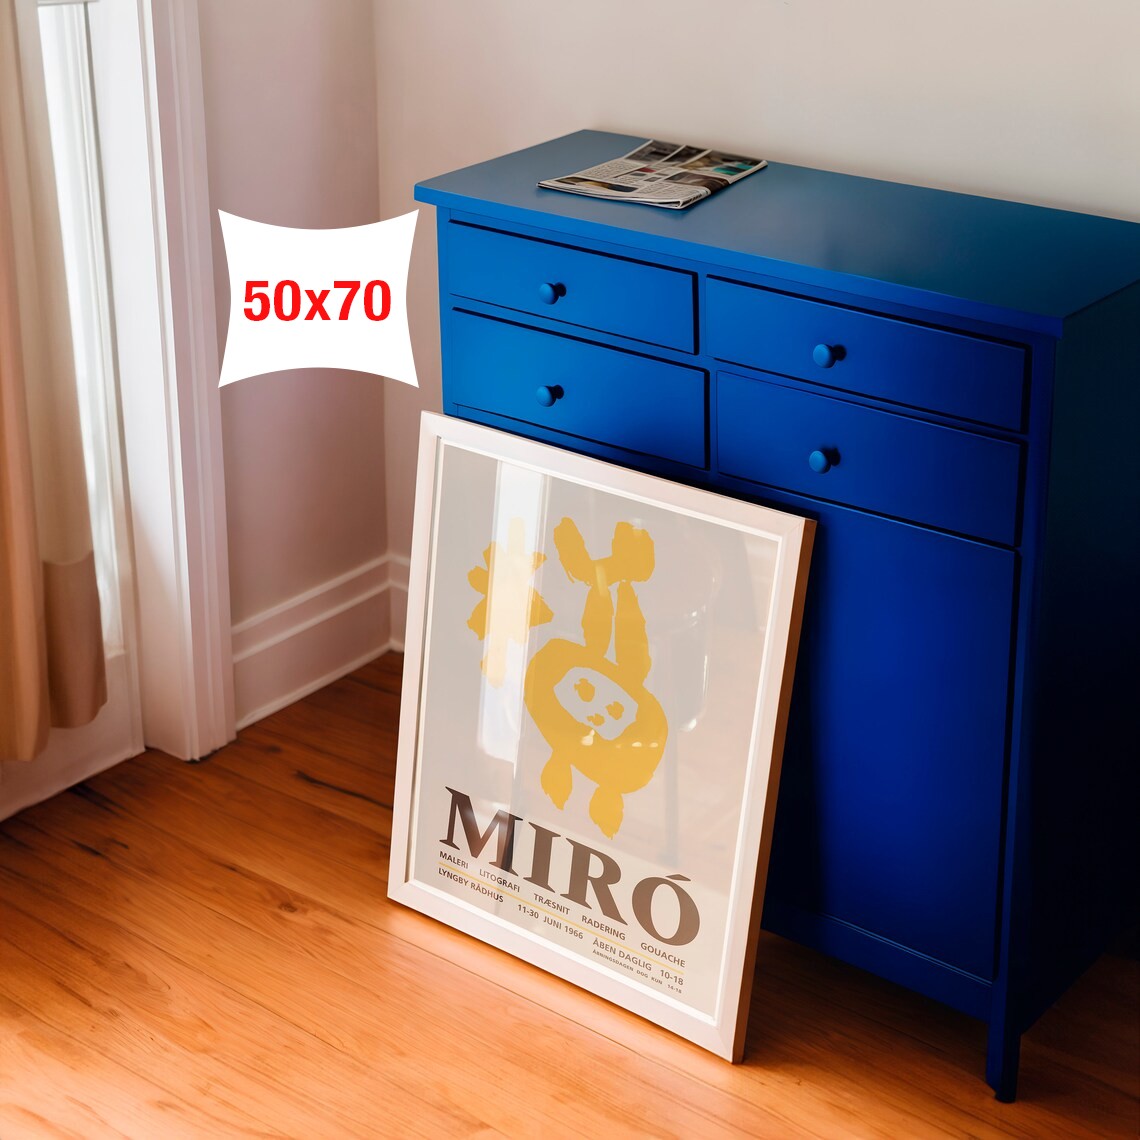 Joan Miro - Sergi Afişi main variant image